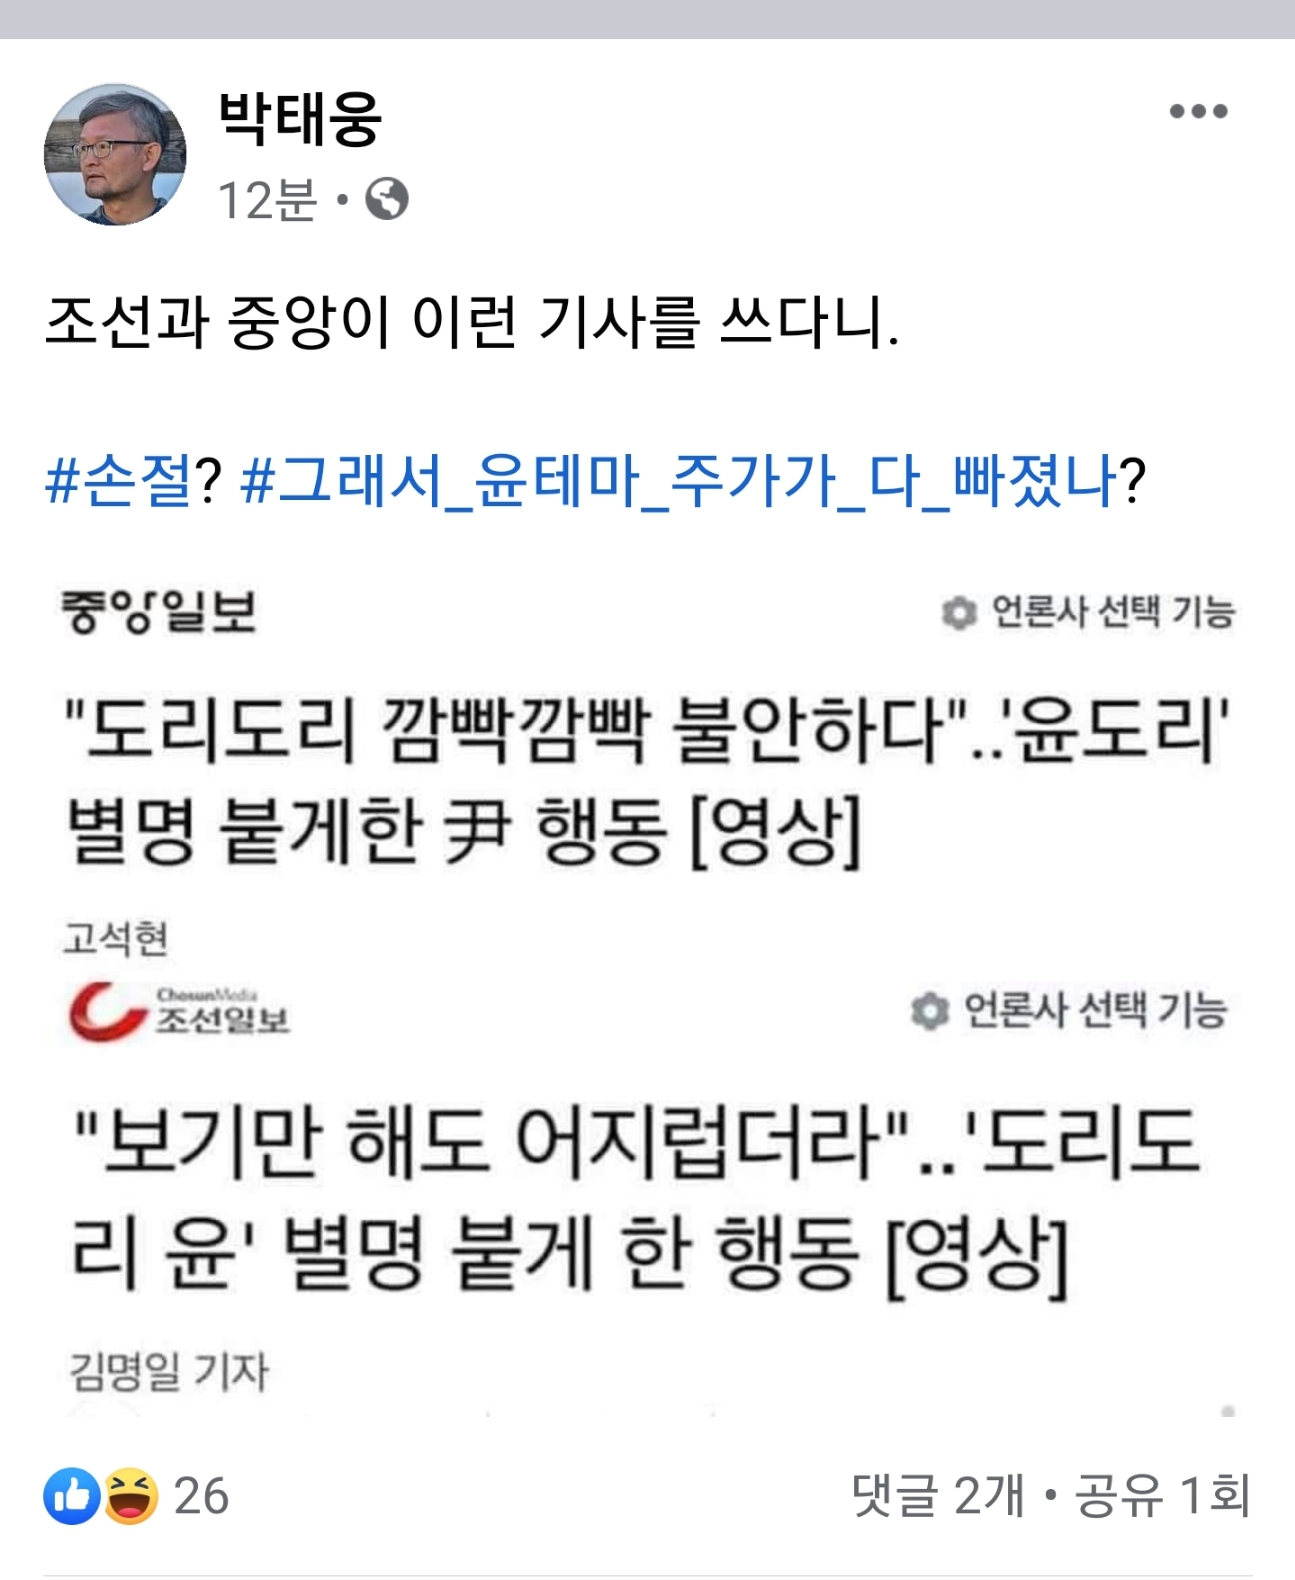 박태웅 ""조선과 중앙이 이런 기사를 쓰다니""